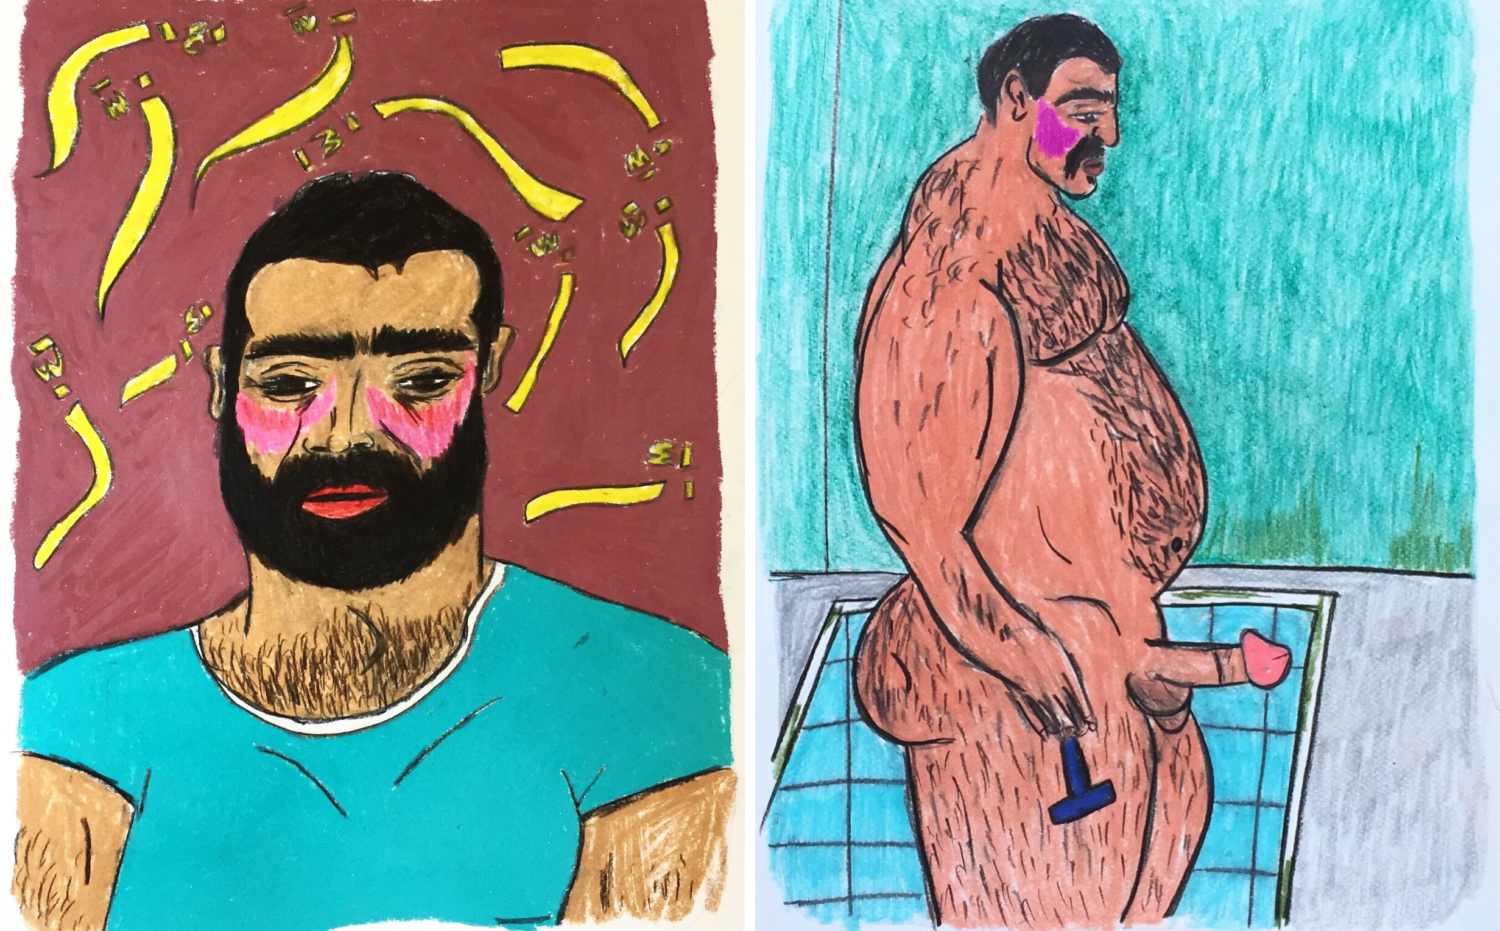 Buntstiftzeichnungen von Soufiane Ababri. Ein Mann im Porträt, ein nackter Mann mit erigiertem Penis.